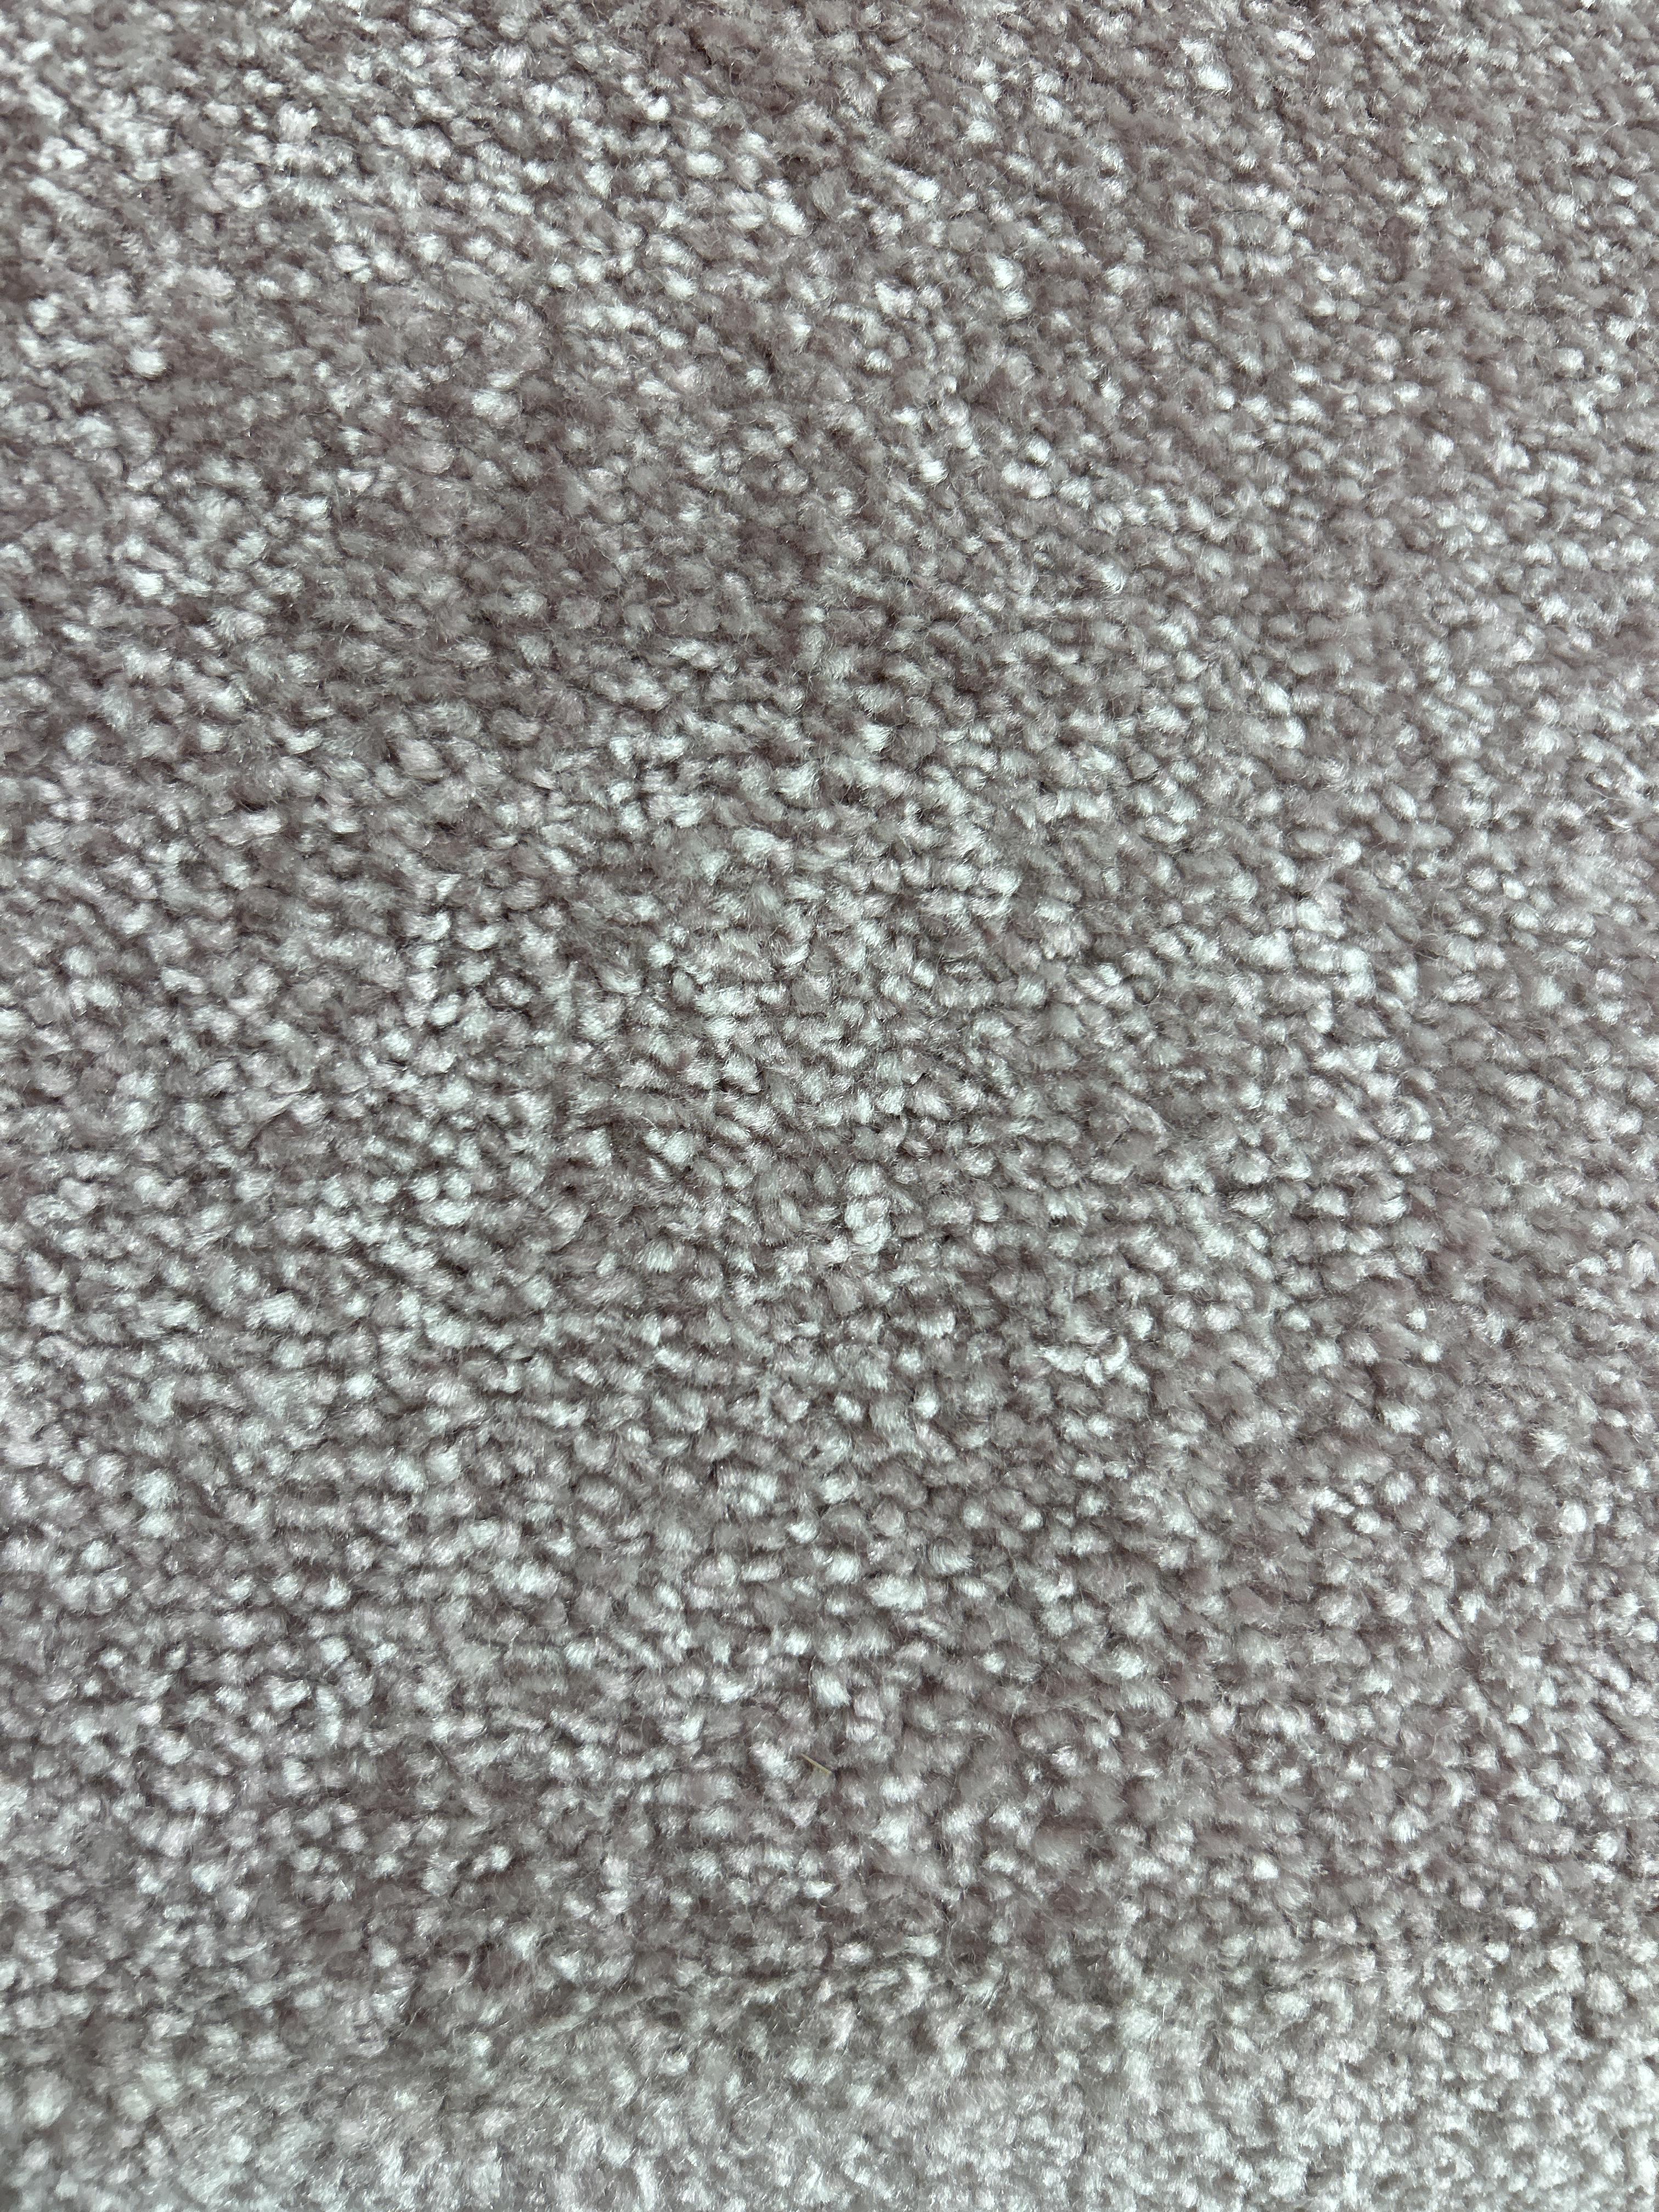 Harragate carpet